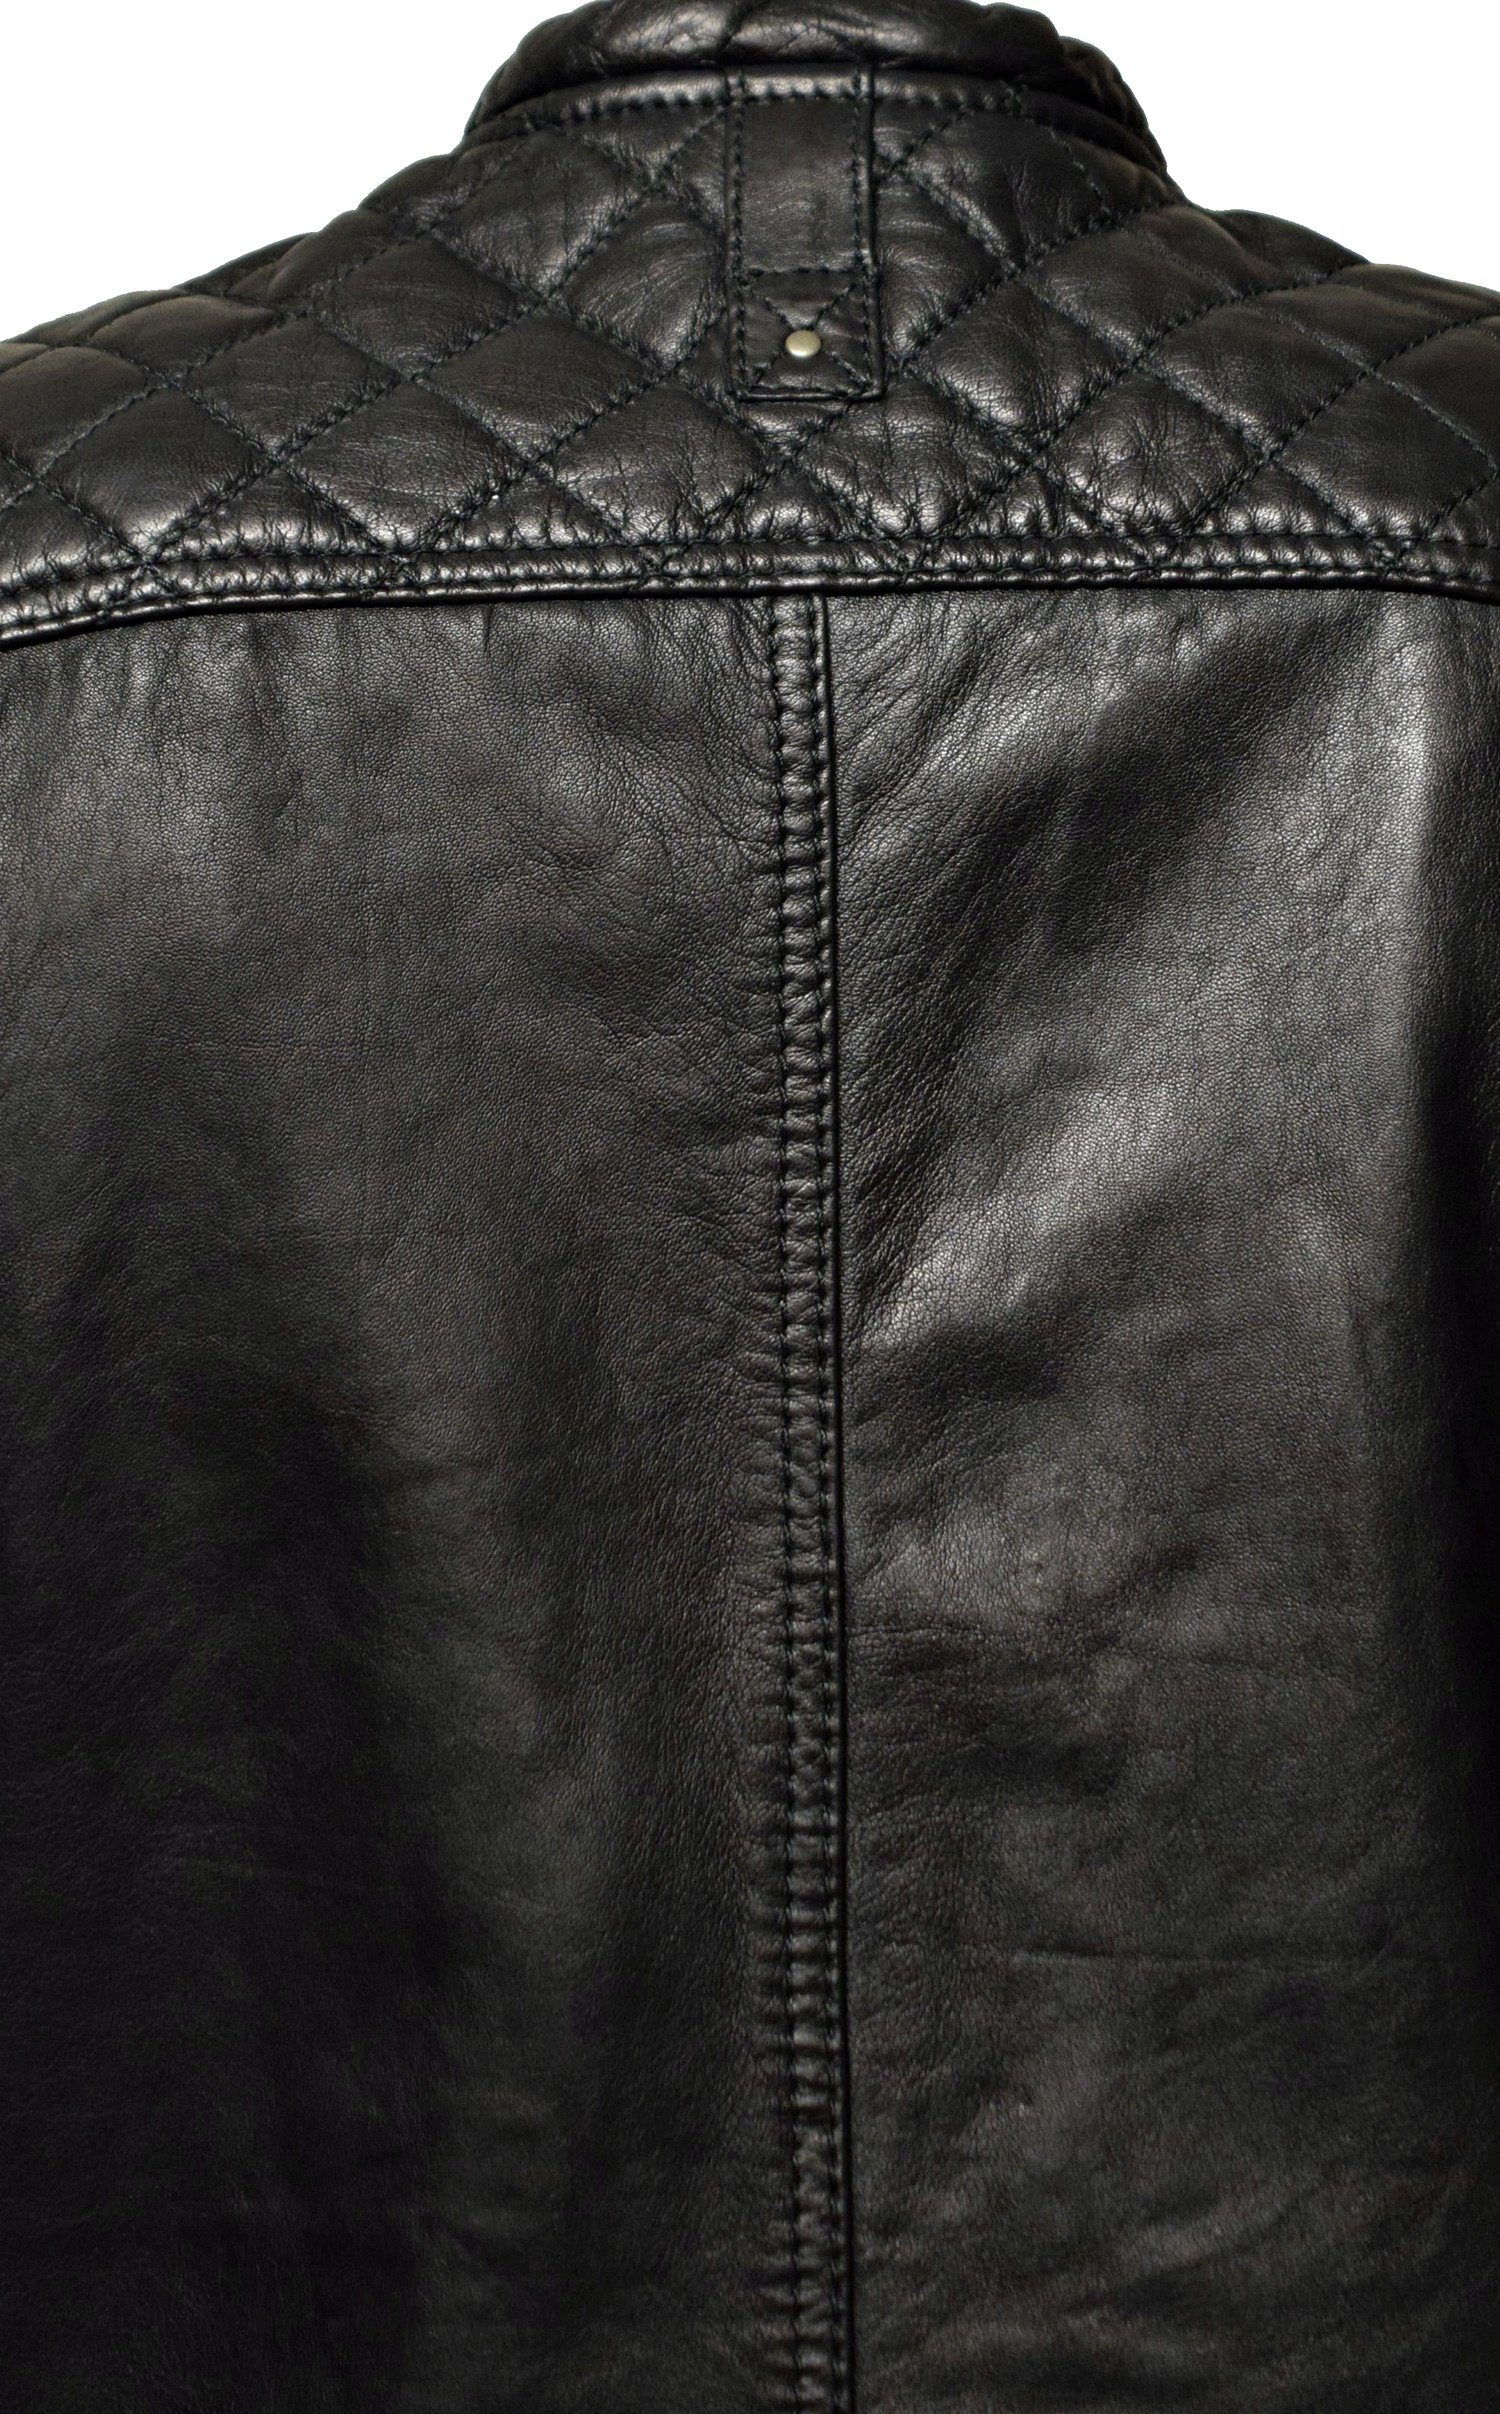 Nilo Schwarz Cognac, Braun, Lederweste Leather Fronttaschen, praktische Zimmert